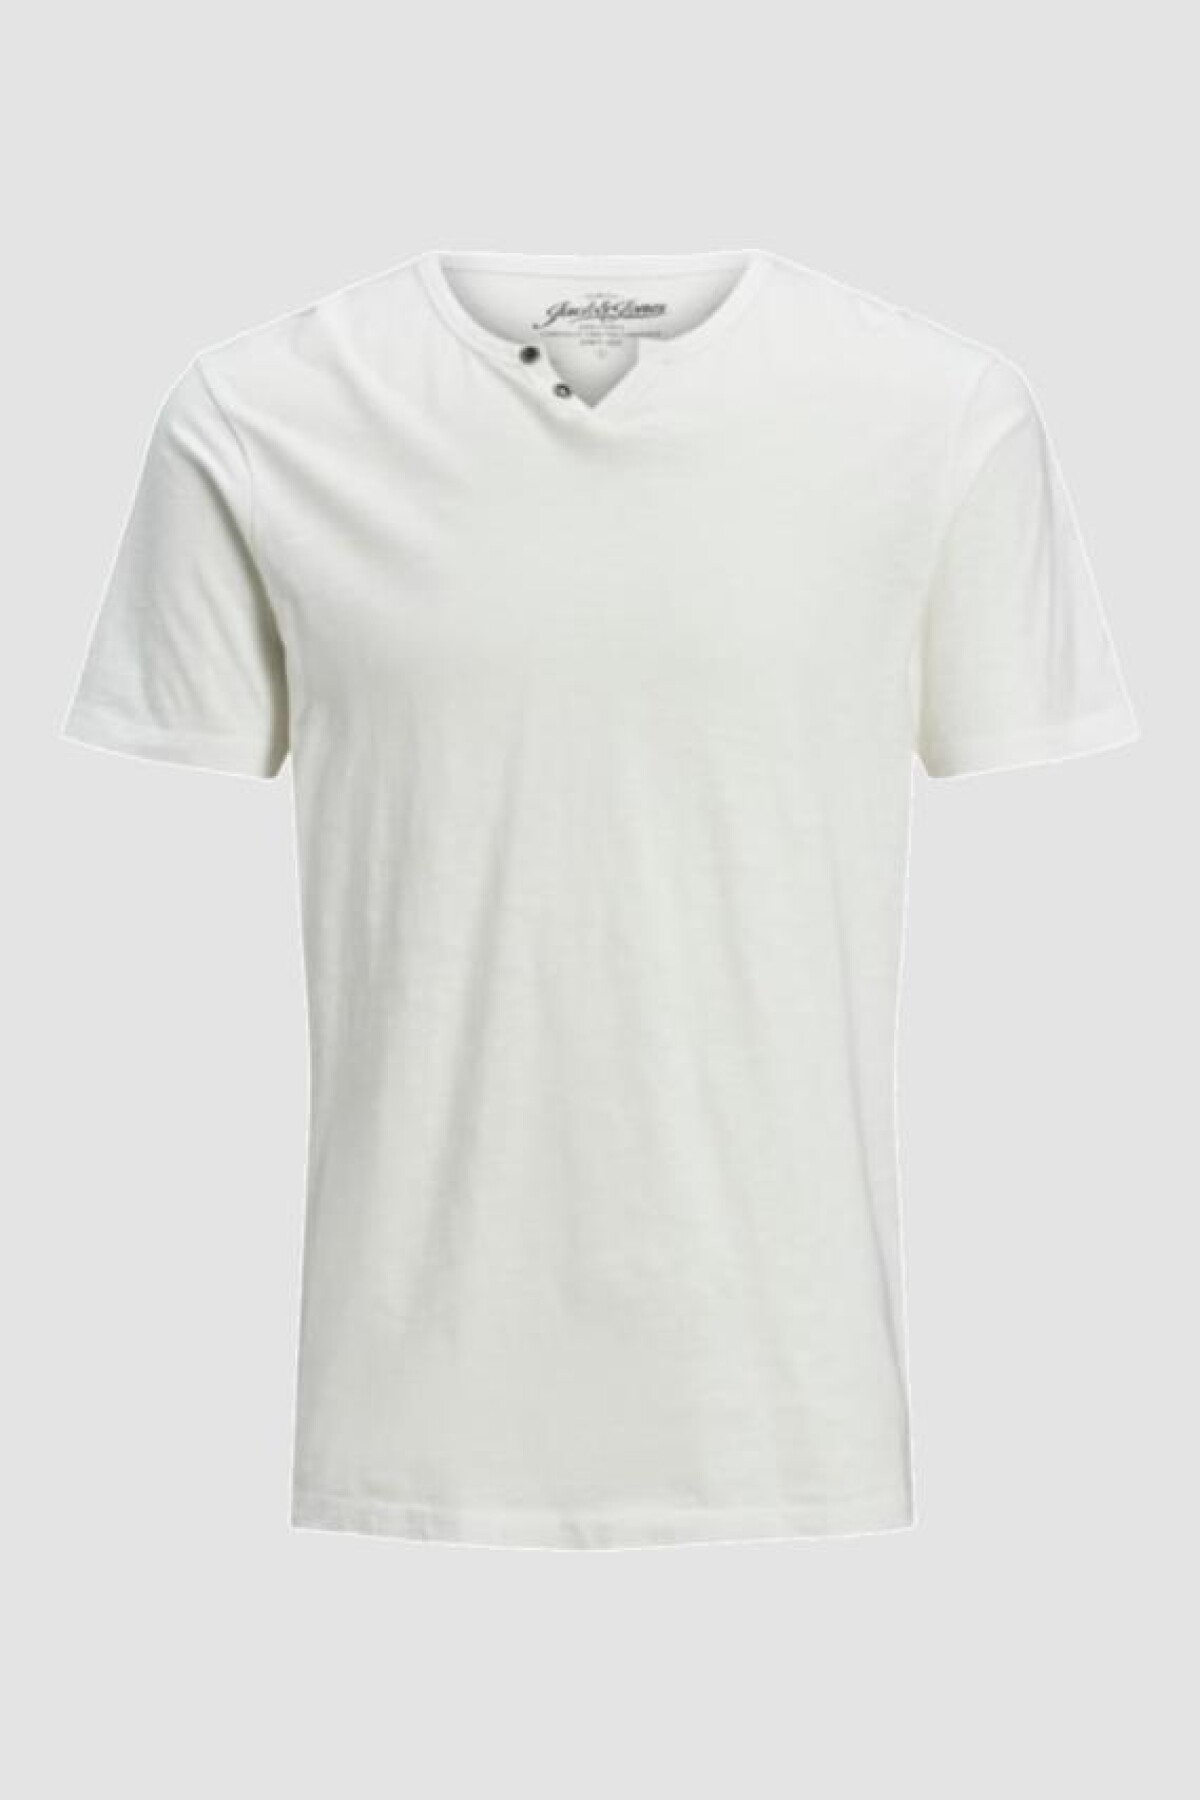 Camiseta Split Cuello "v" Cloud Dancer